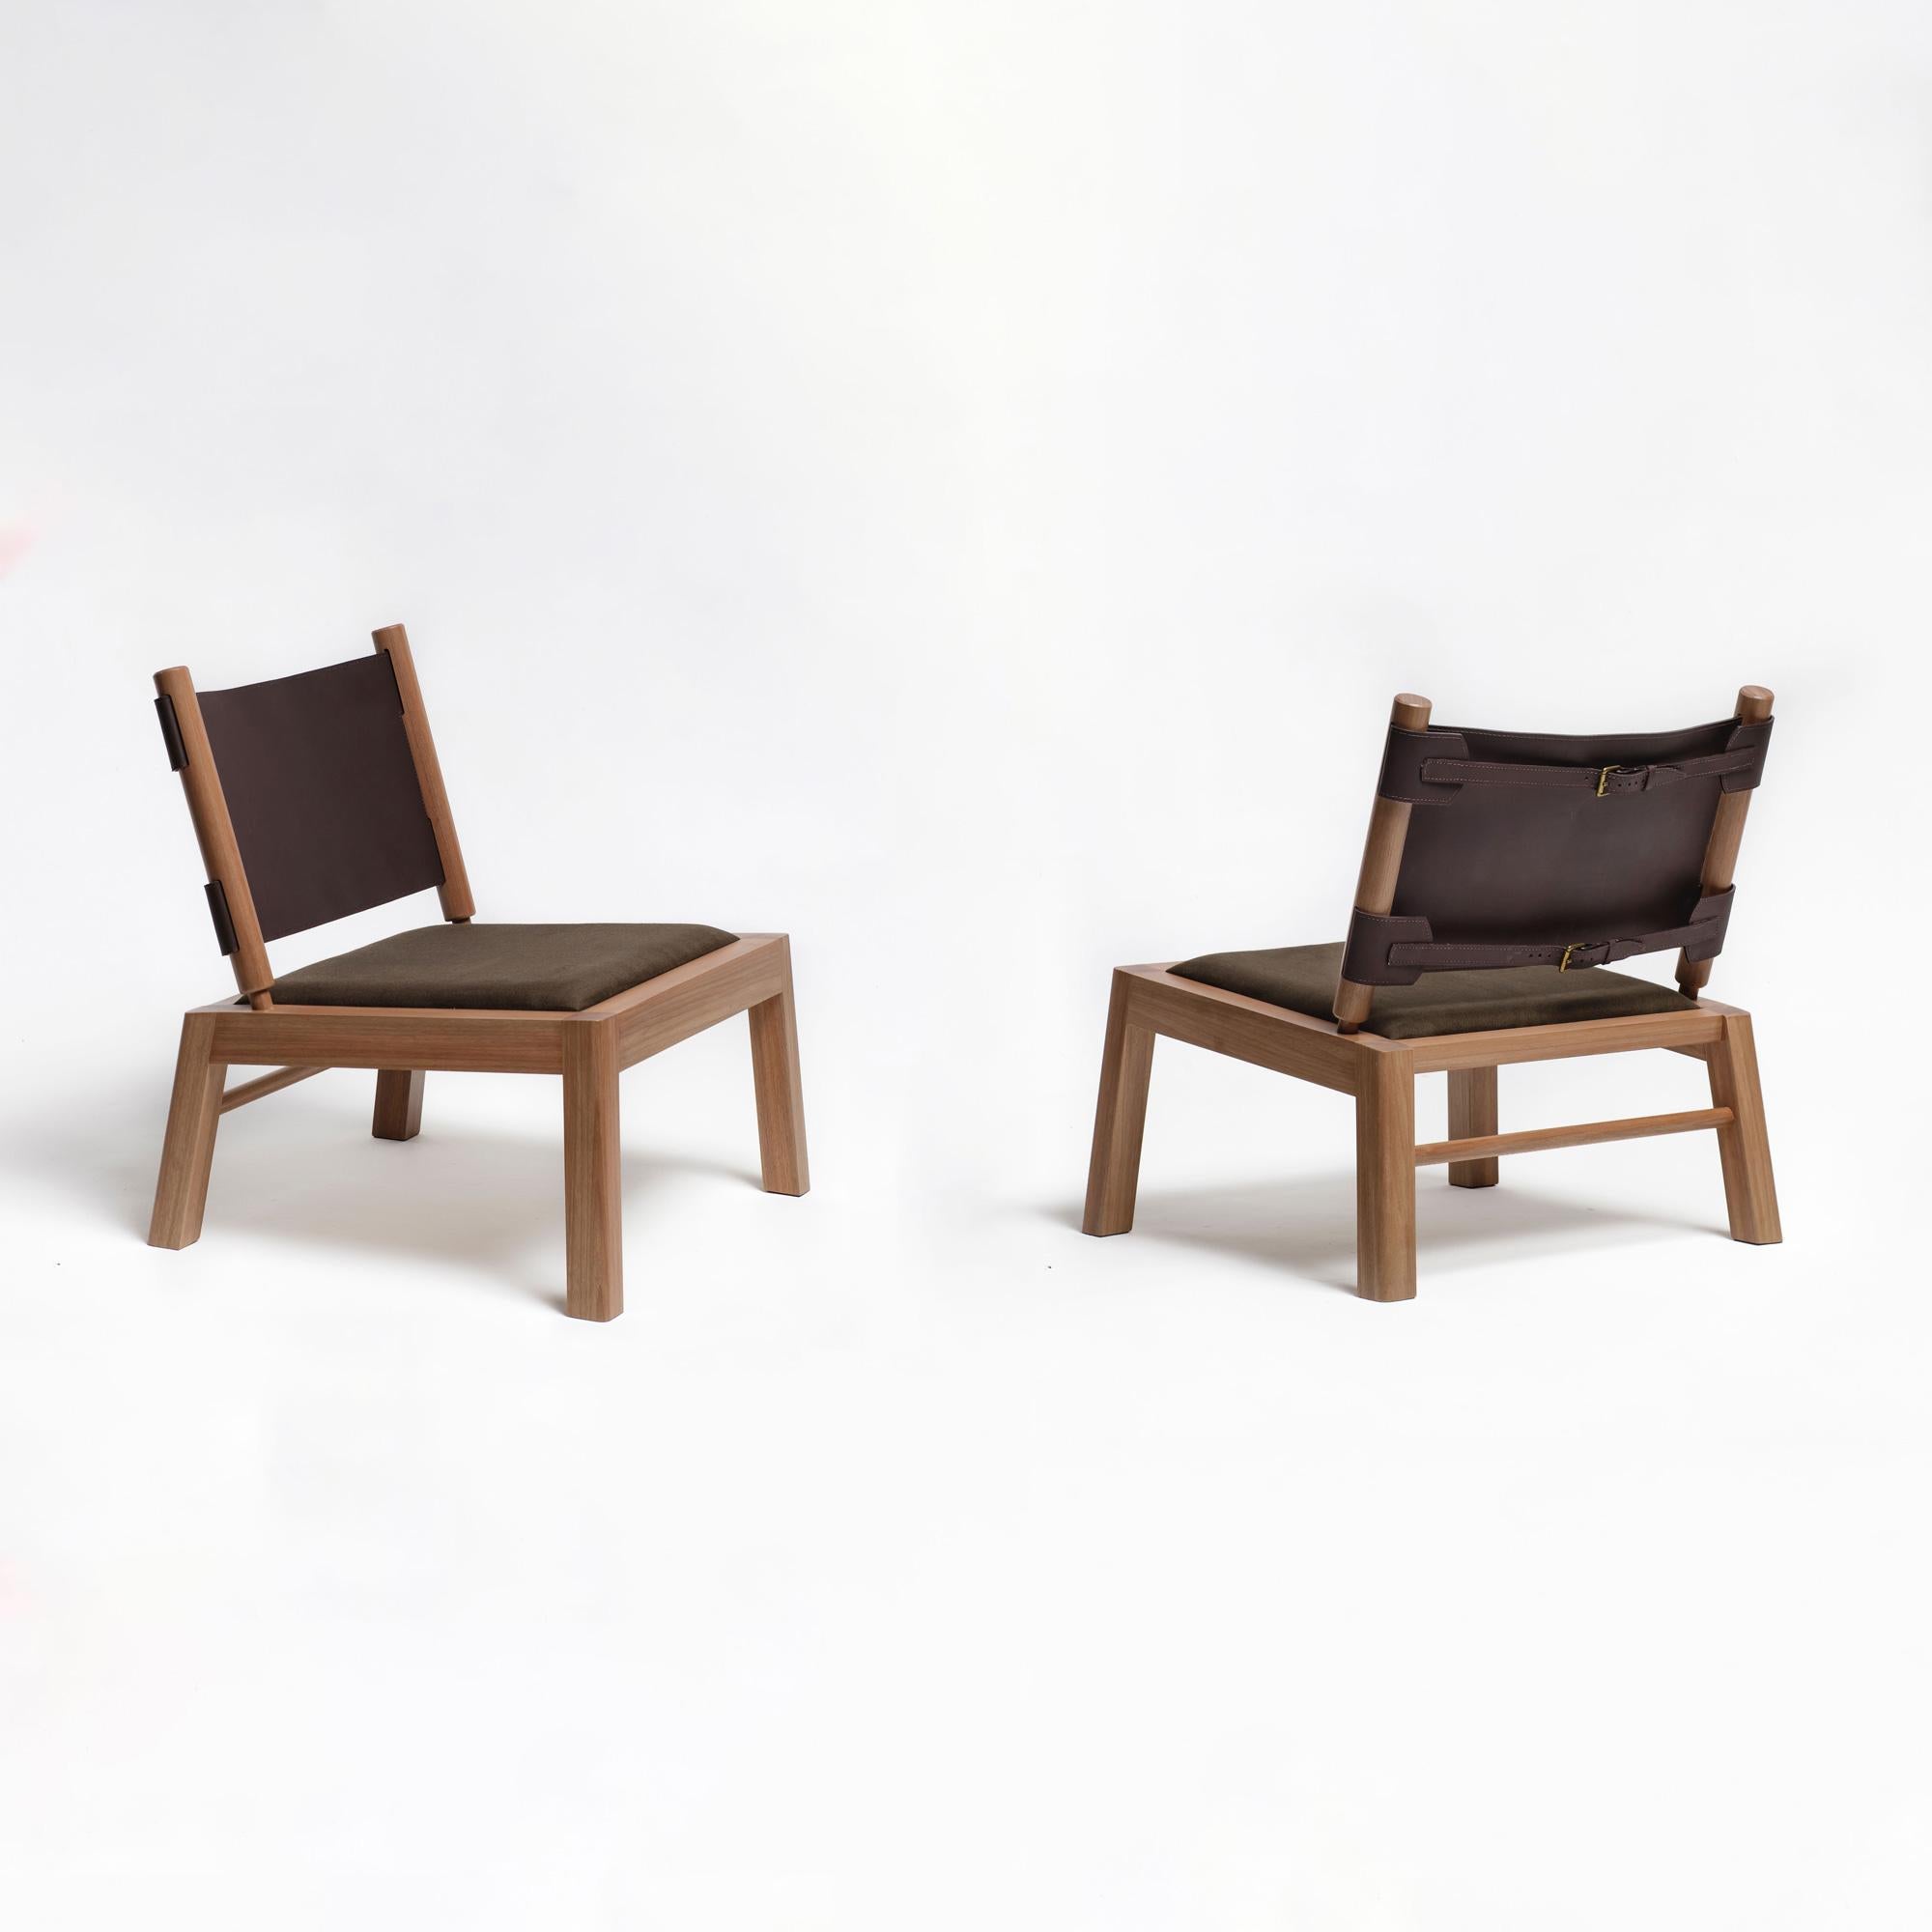 Ensemble de 2 chaises longues Oulipo. Oulipo est une chaise longue contemporaine fabriquée à la main en bois dur brésilien certifié 